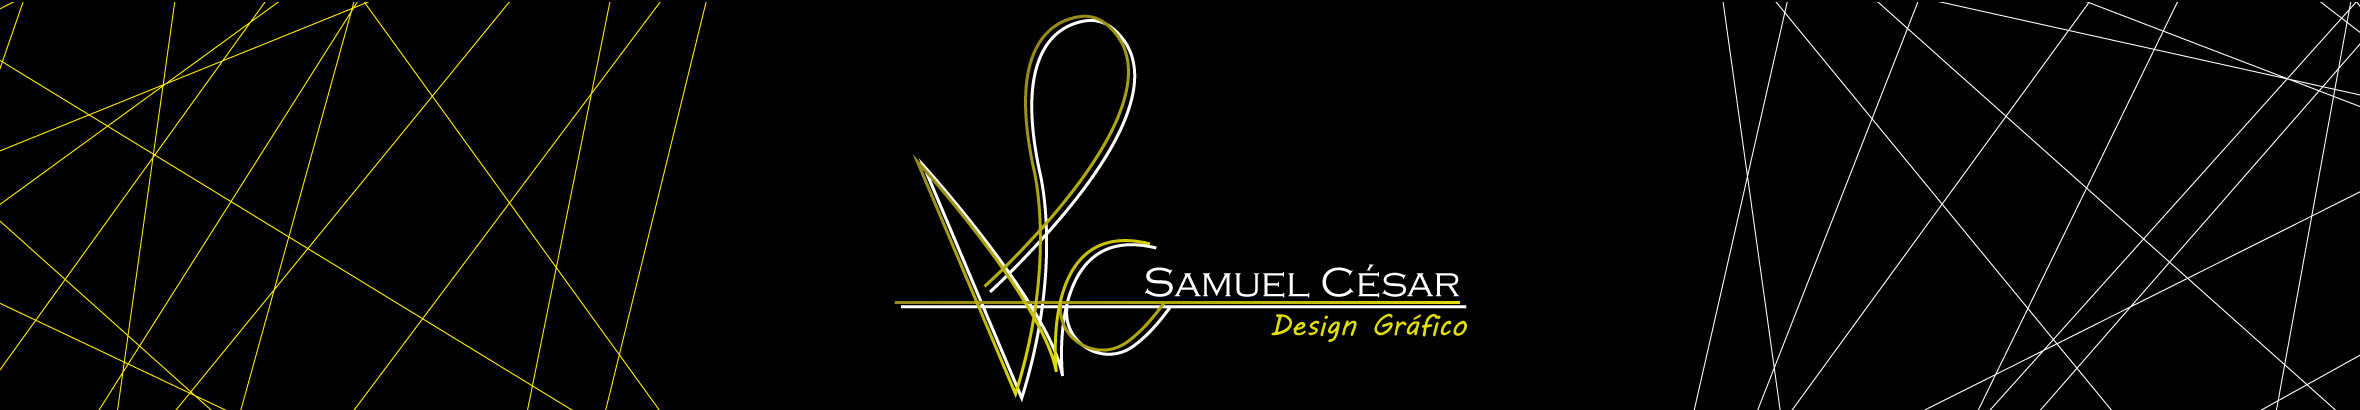 Profil-Banner von Samuel César